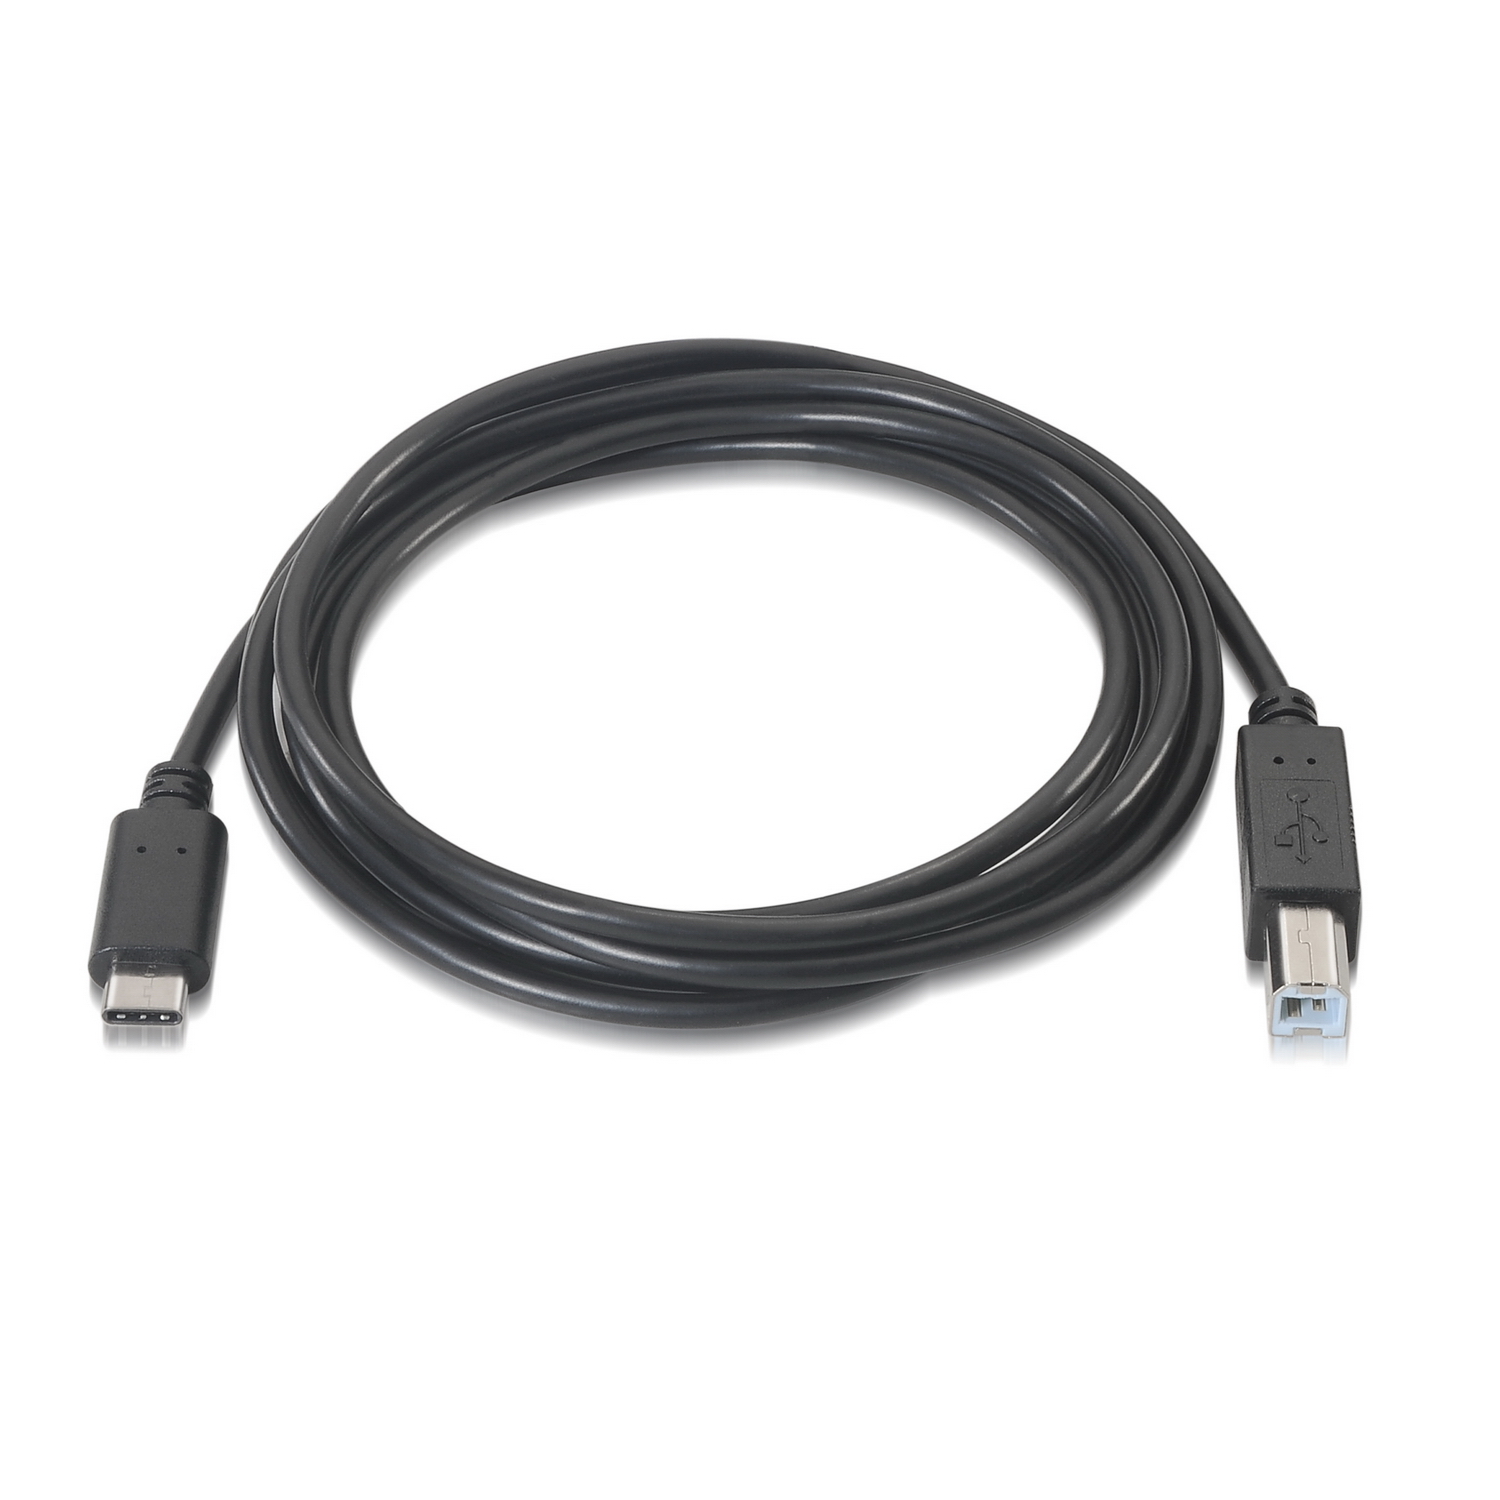  SLLEA Cable de impresora USB 2.0 para HP 8121-1186 Producto de  1126 macho A a macho B Ordenador portátil Cable de transferencia de datos  de alta velocidad Negro : Electrónica